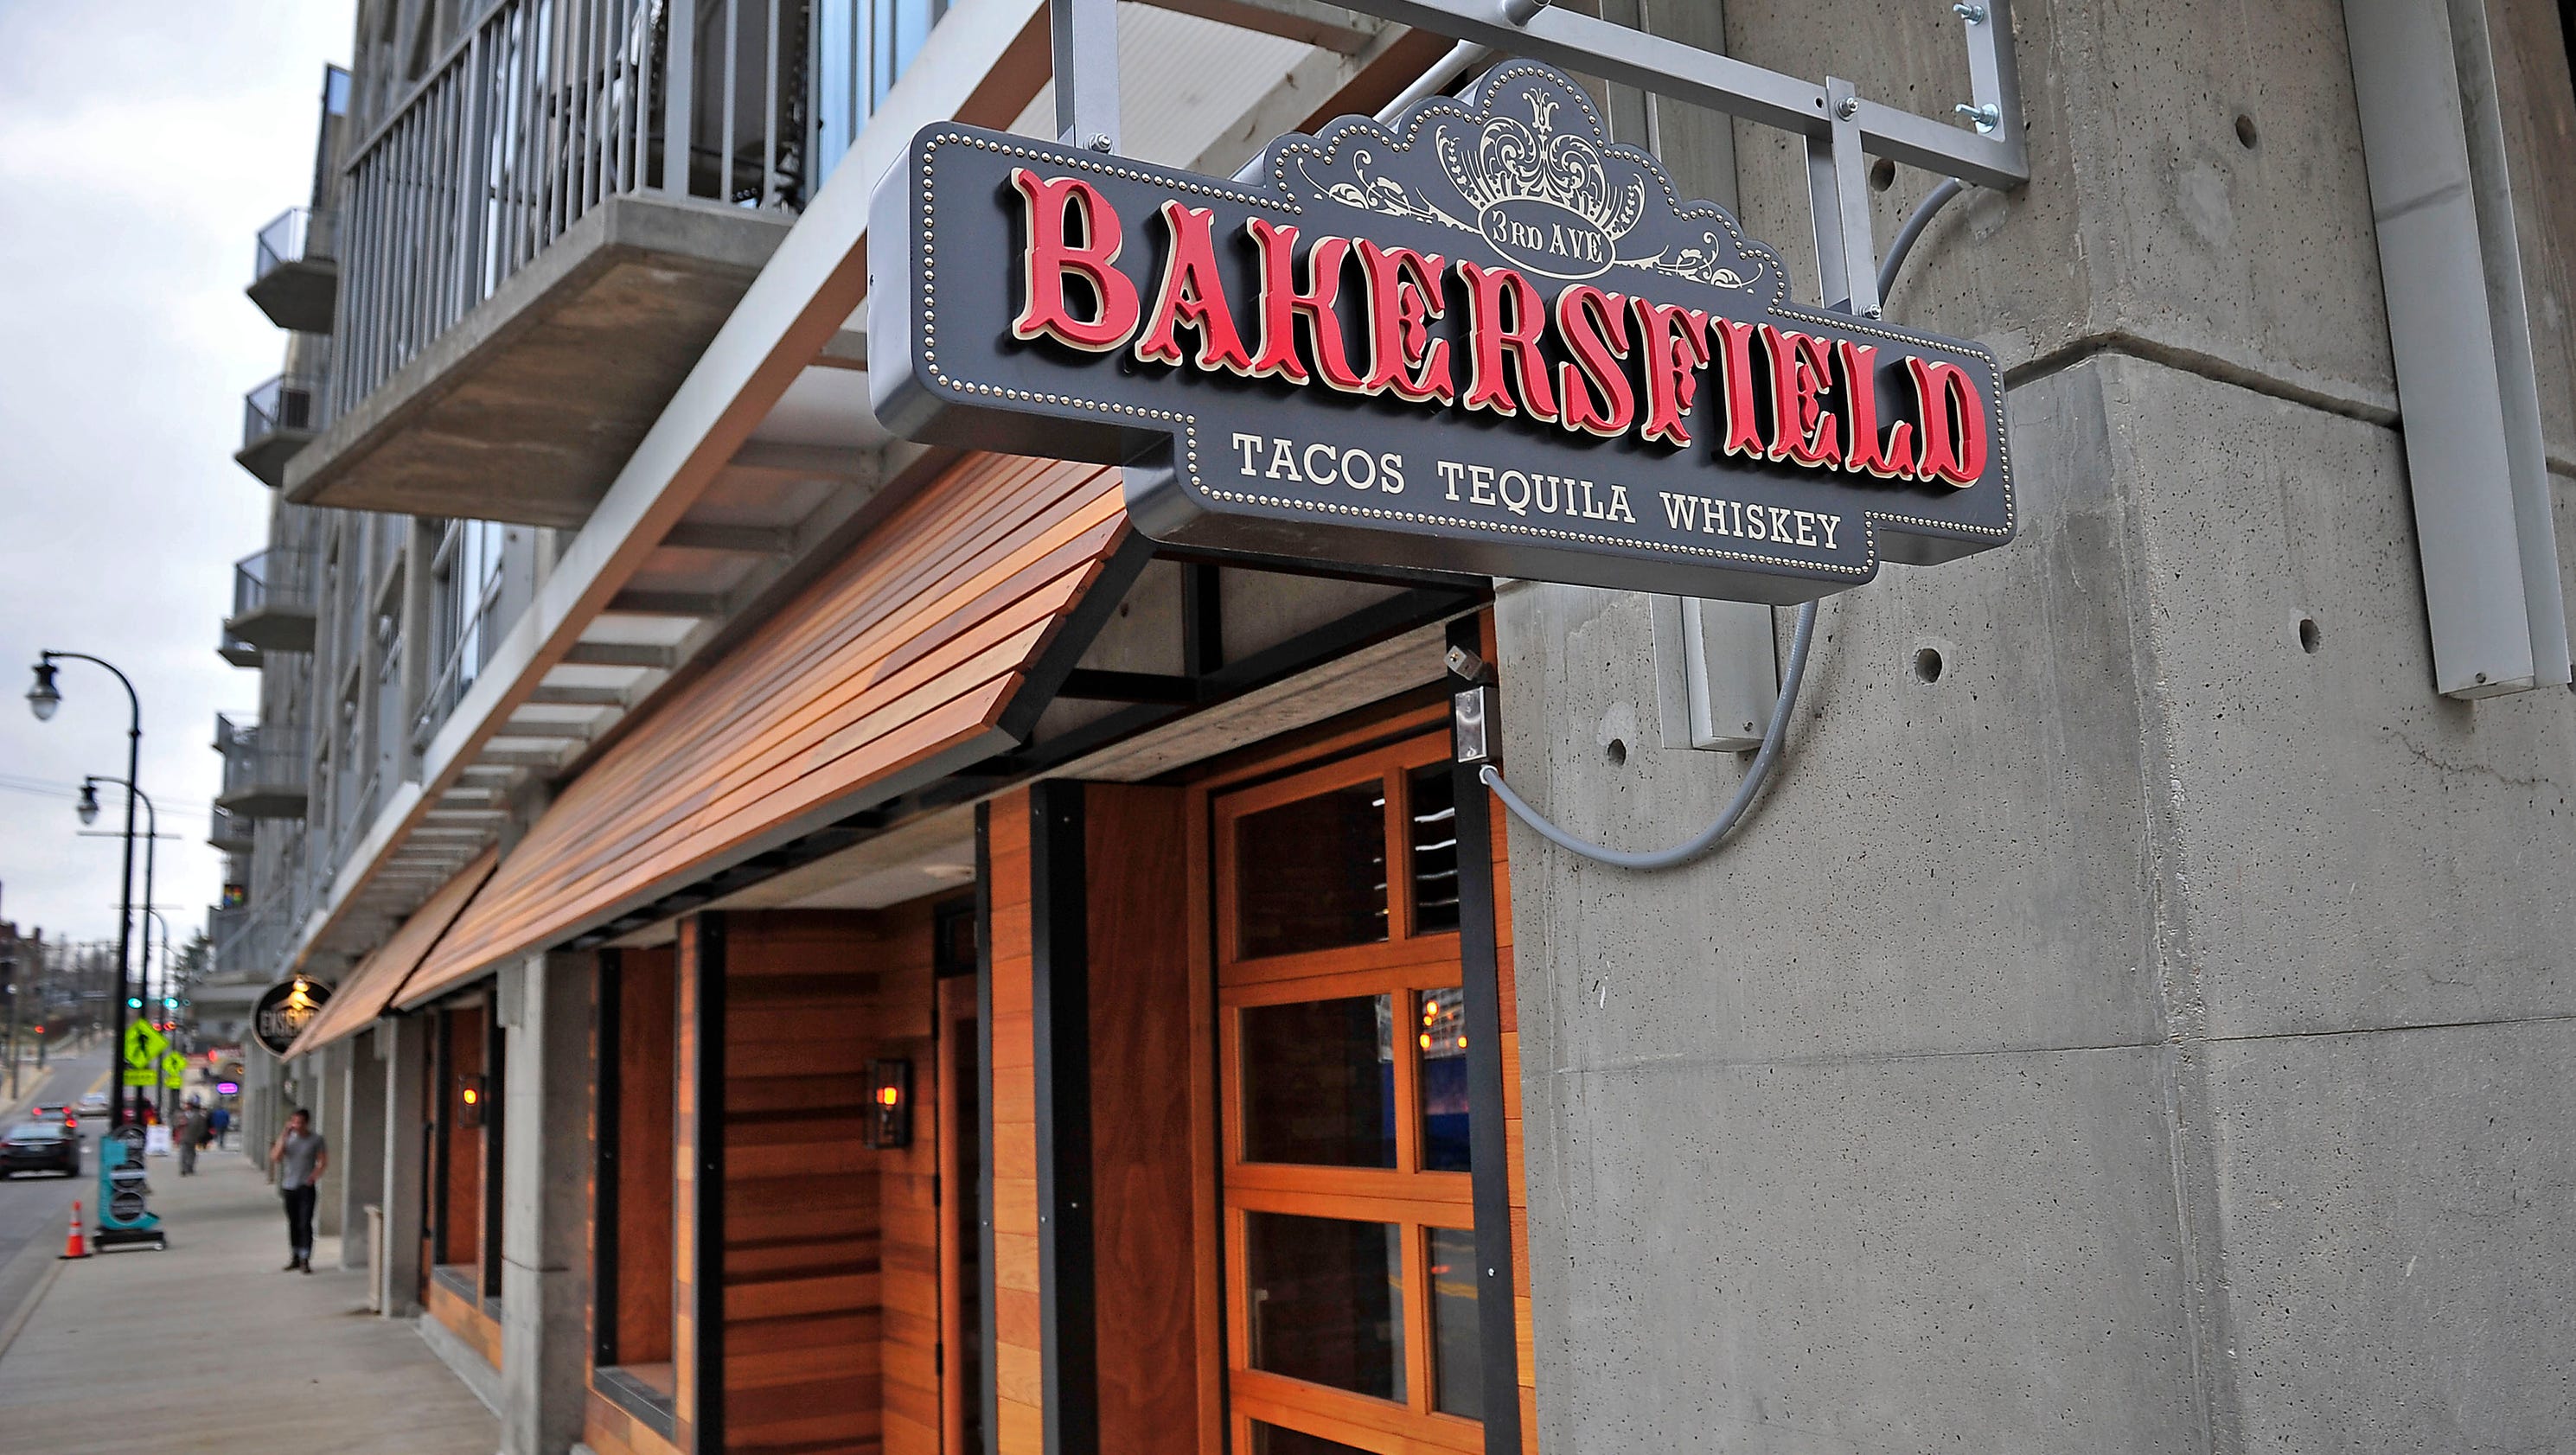 The Bakersfield Restaurant in SoBro